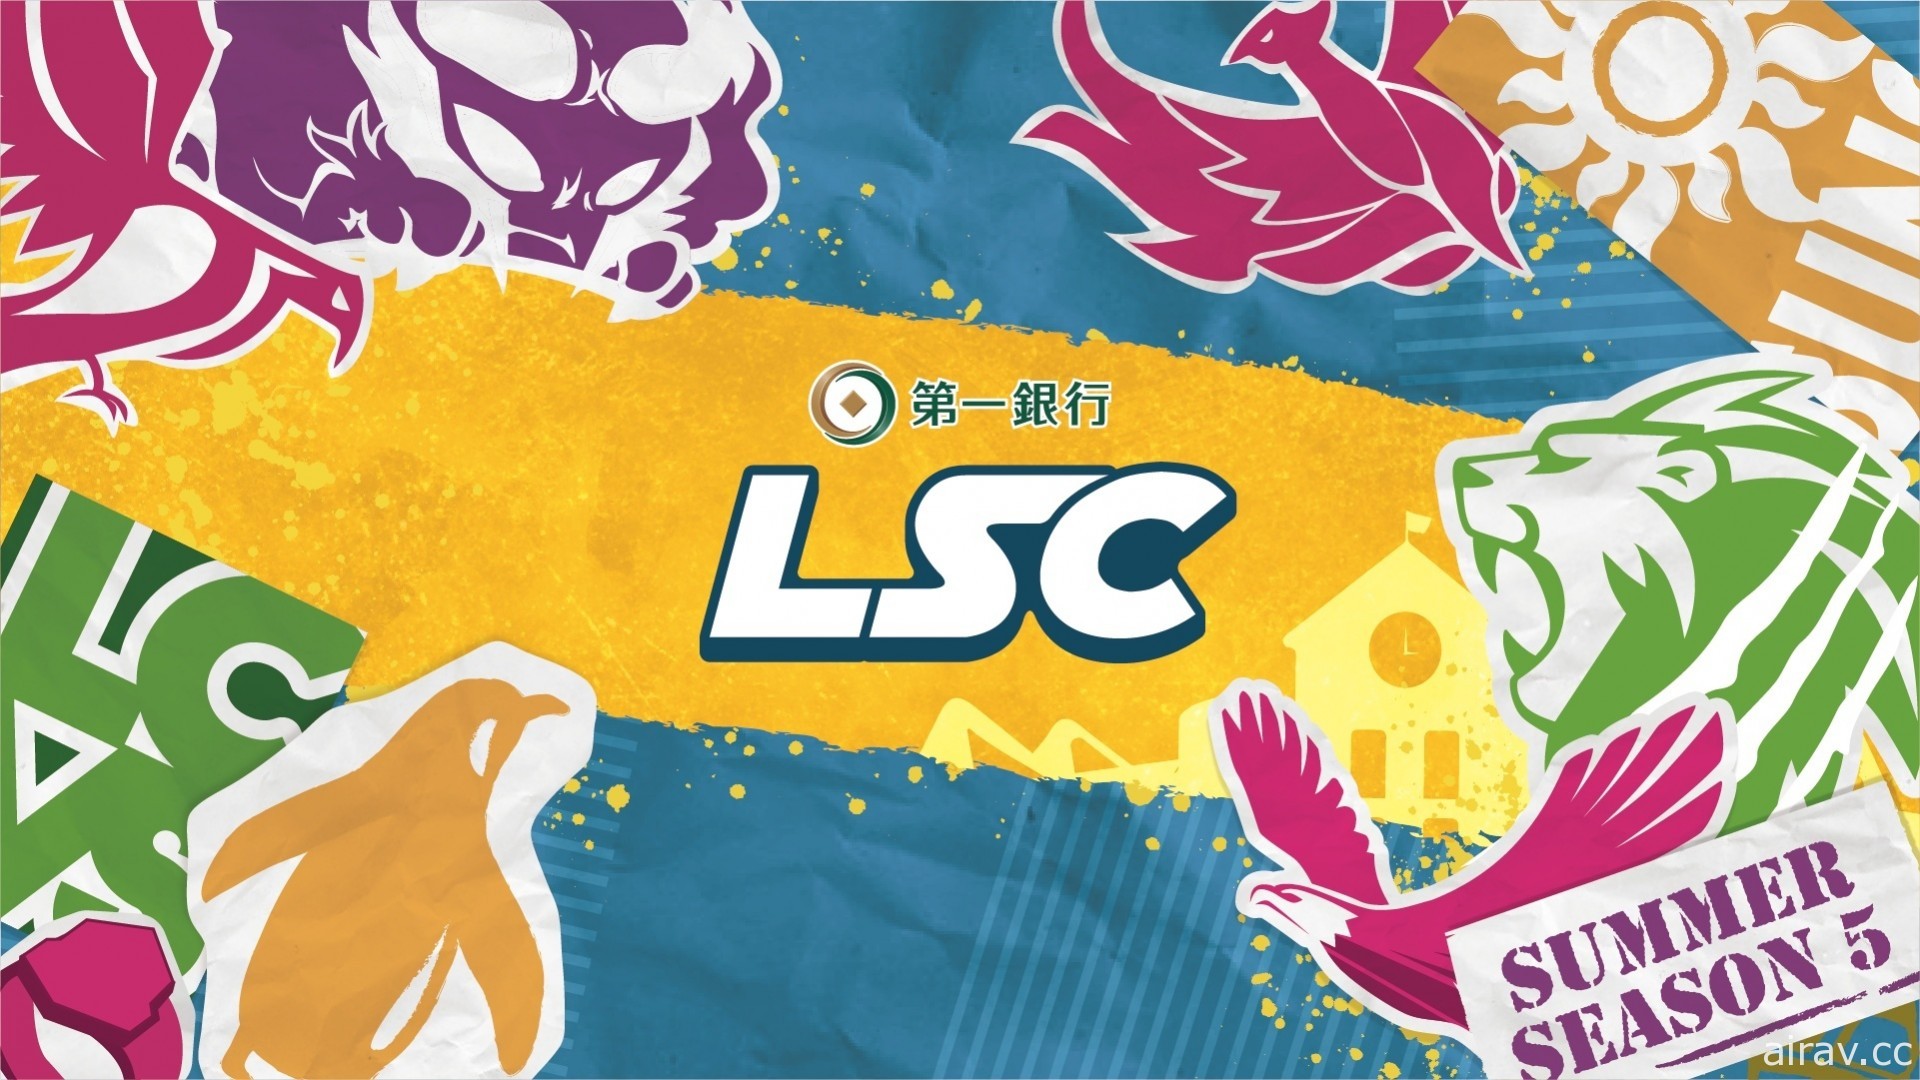 《英雄聯盟》校園聯賽 LSC 夏季公開賽開放報名